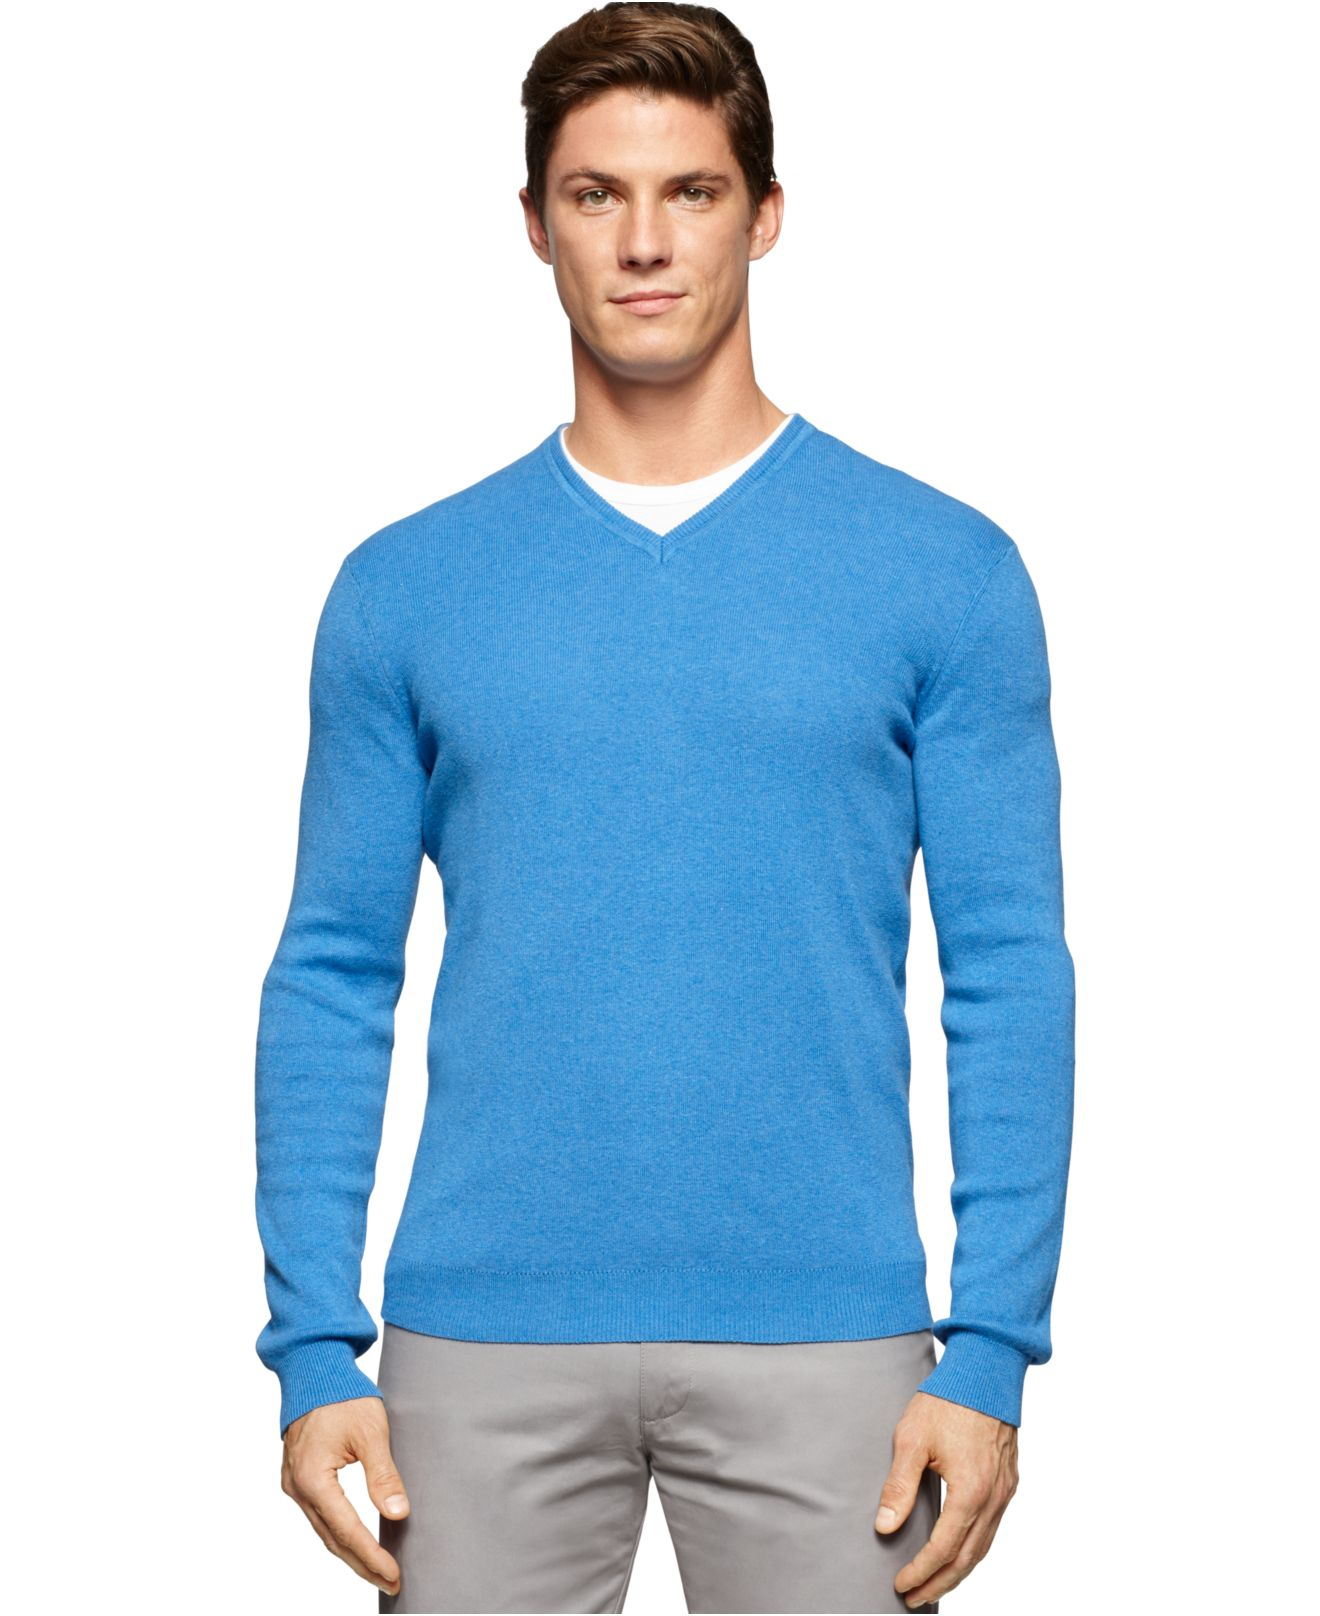 Lyst - Calvin Klein V-neck Sweater in Blue for Men